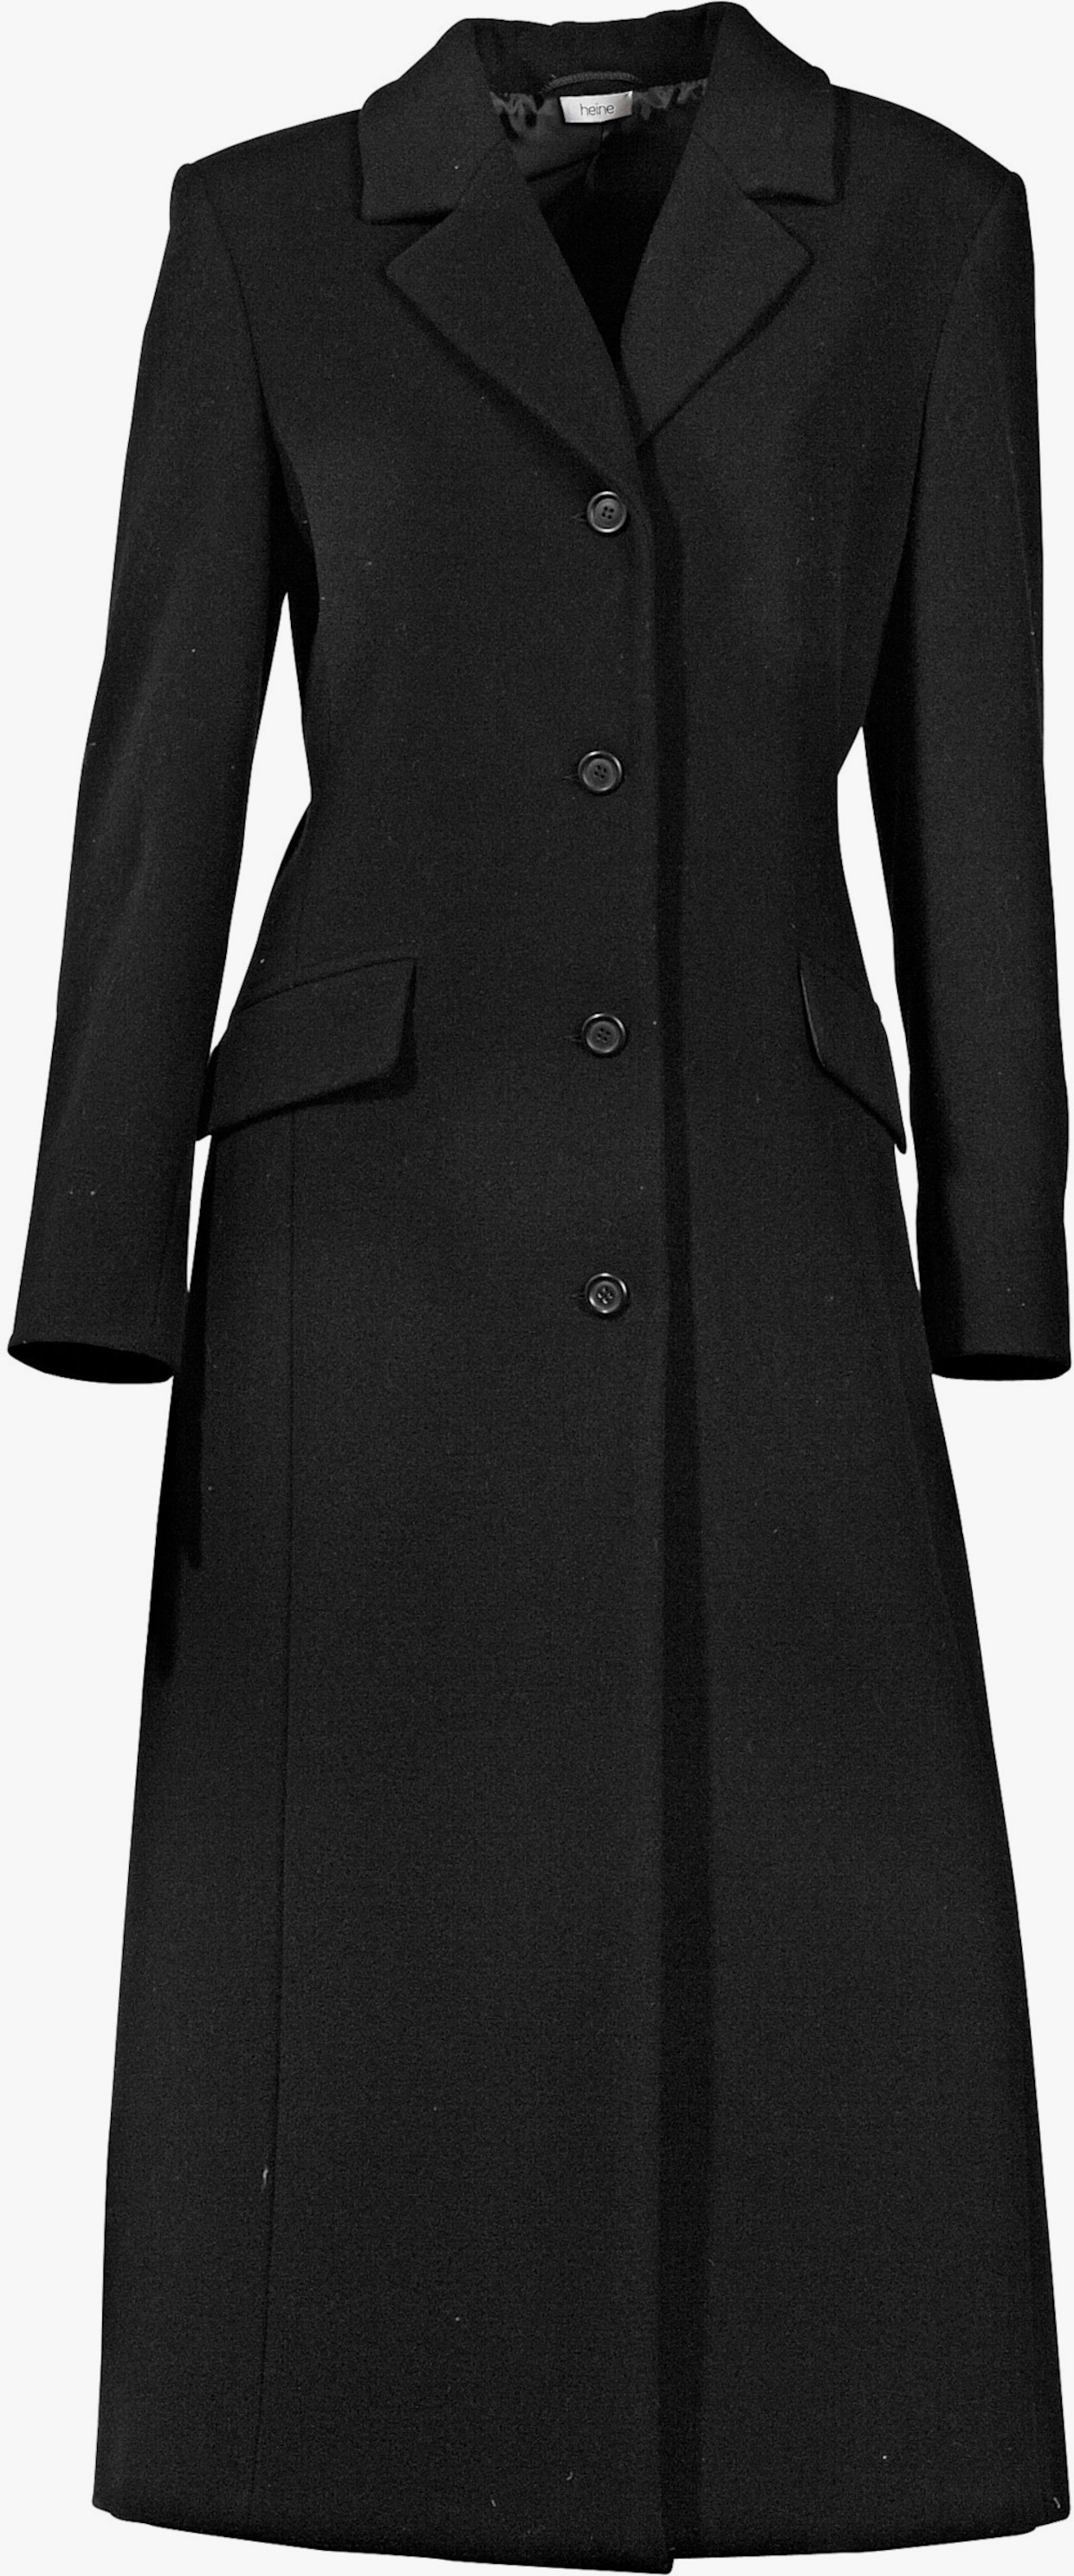 heine Manteau blazer - noir